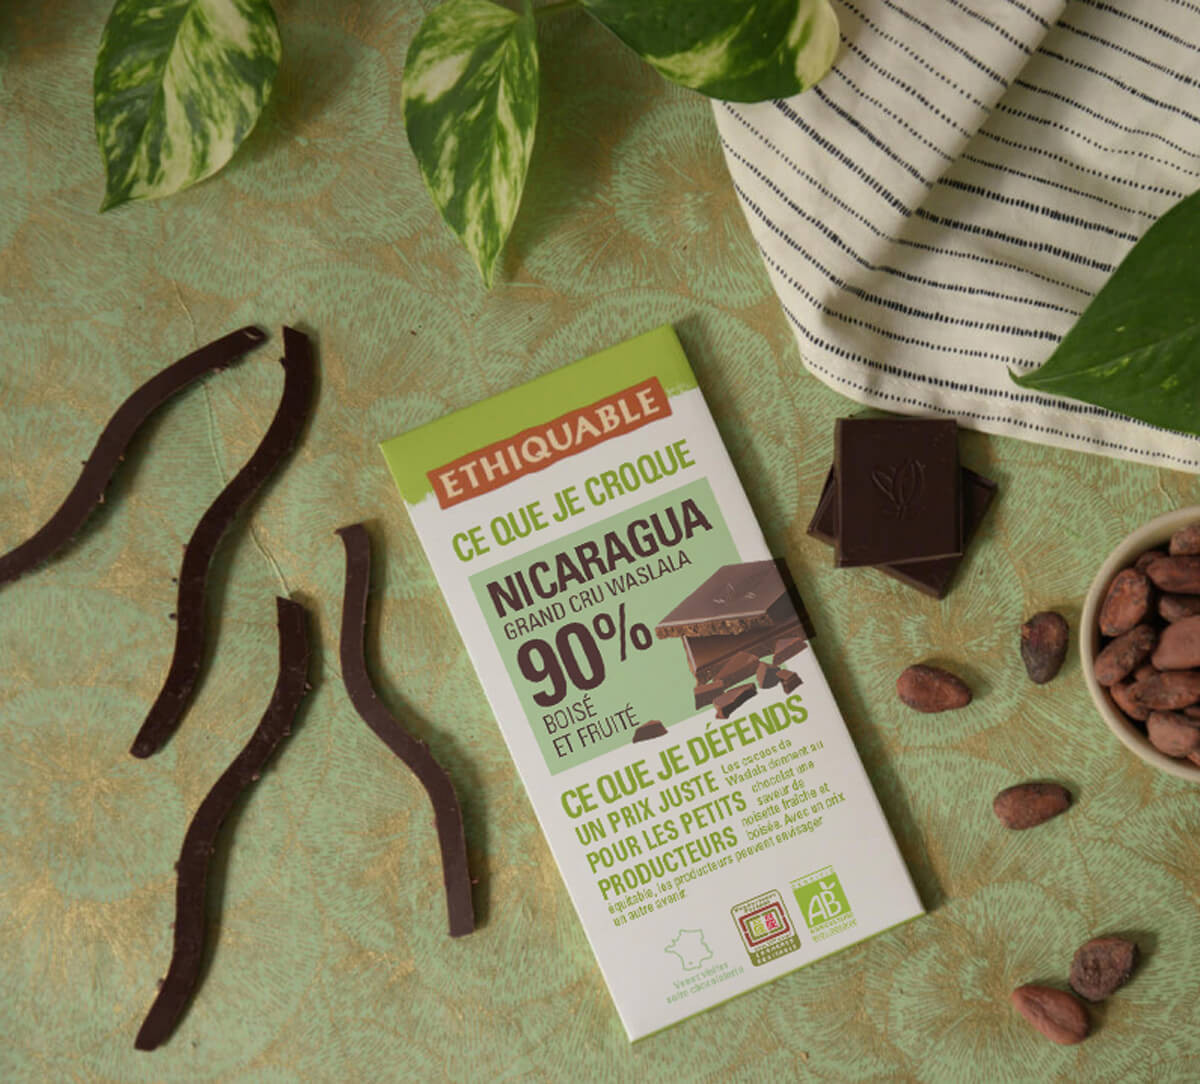 Ethiquable - Chocolat noir 90% de cacao bio du Guatemala issu du Commerce équitable. Tablette fabriquée dans le Gers.